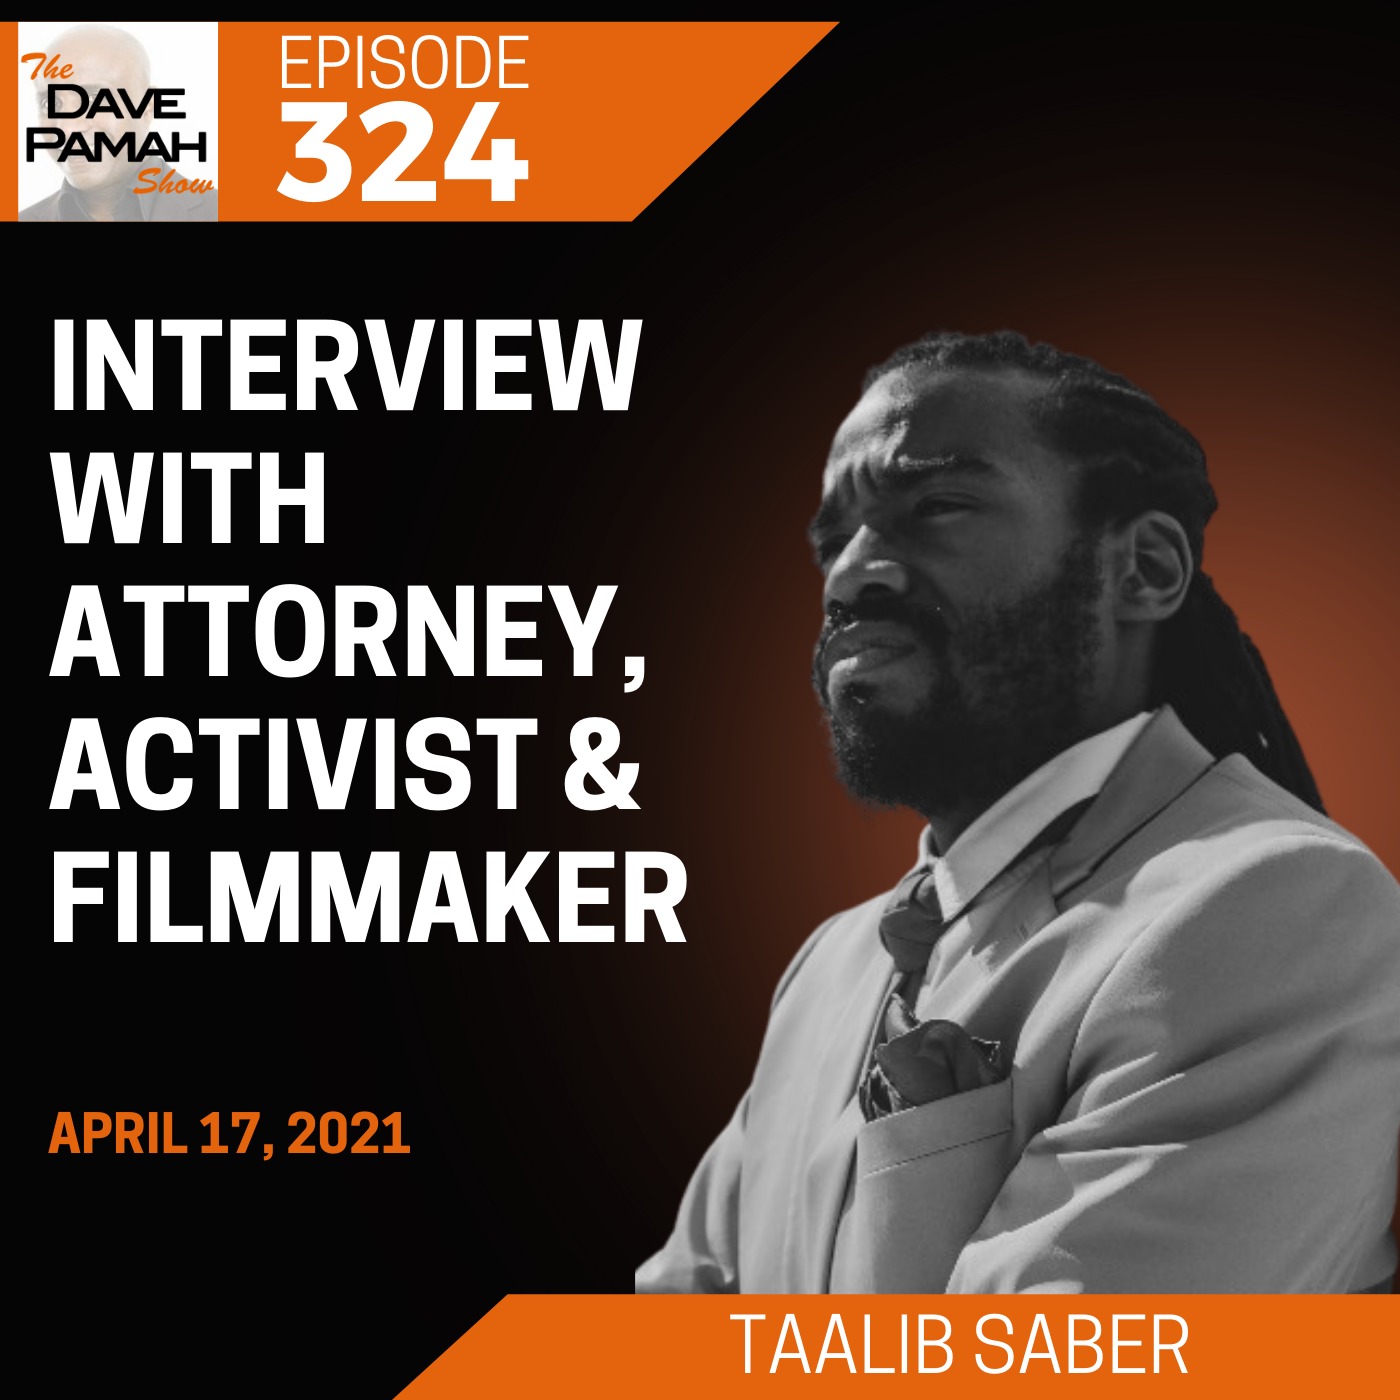 Interview with Attorney, Activist & Filmmaker Taalib Saber